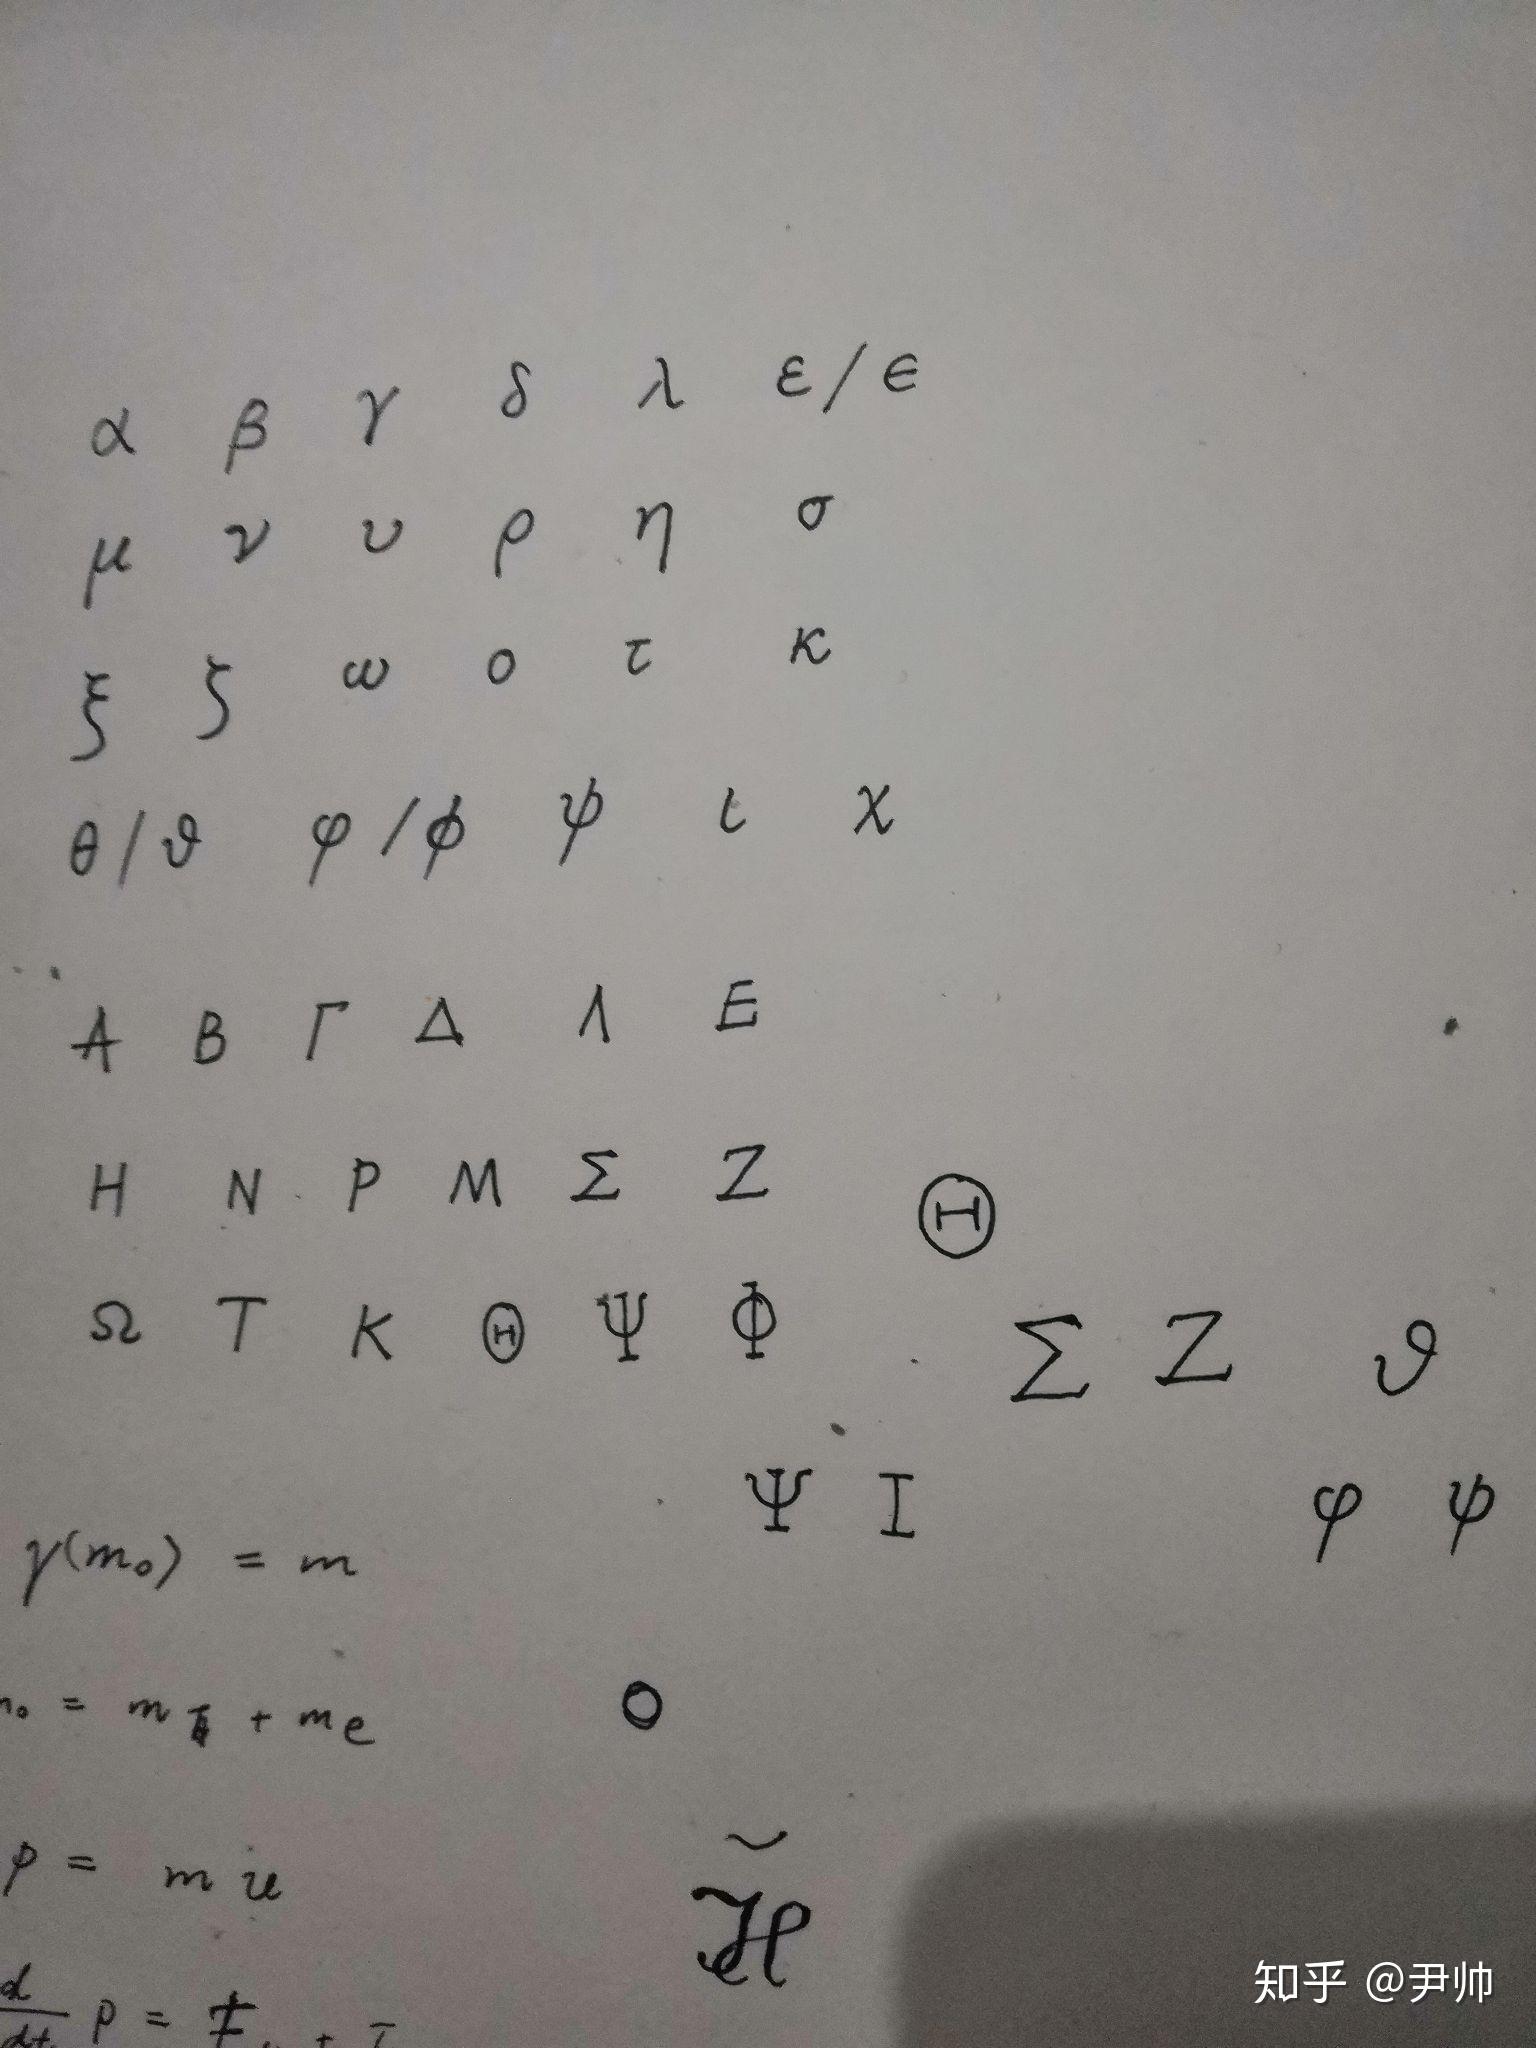 希腊字母书写图片